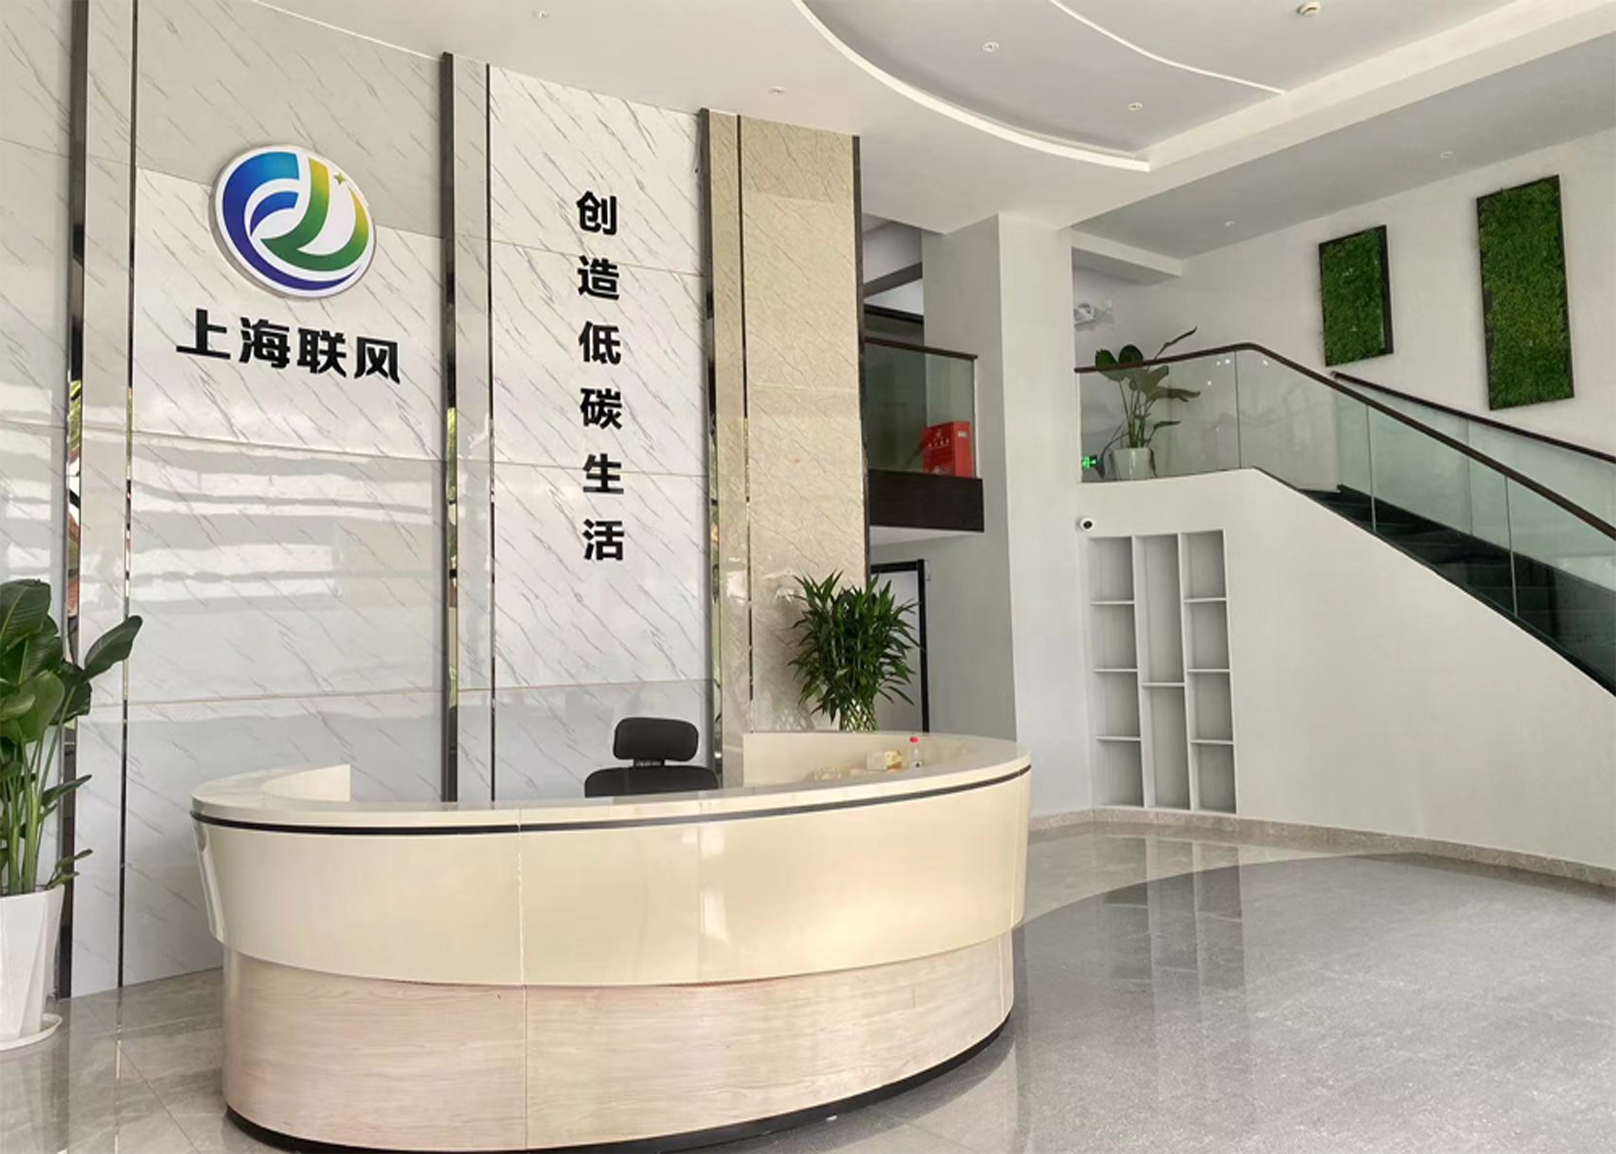 I-Shanghai-Lianfeng-Gas-Co.-LTD-Jiangsu-Manufacturing-Base-3